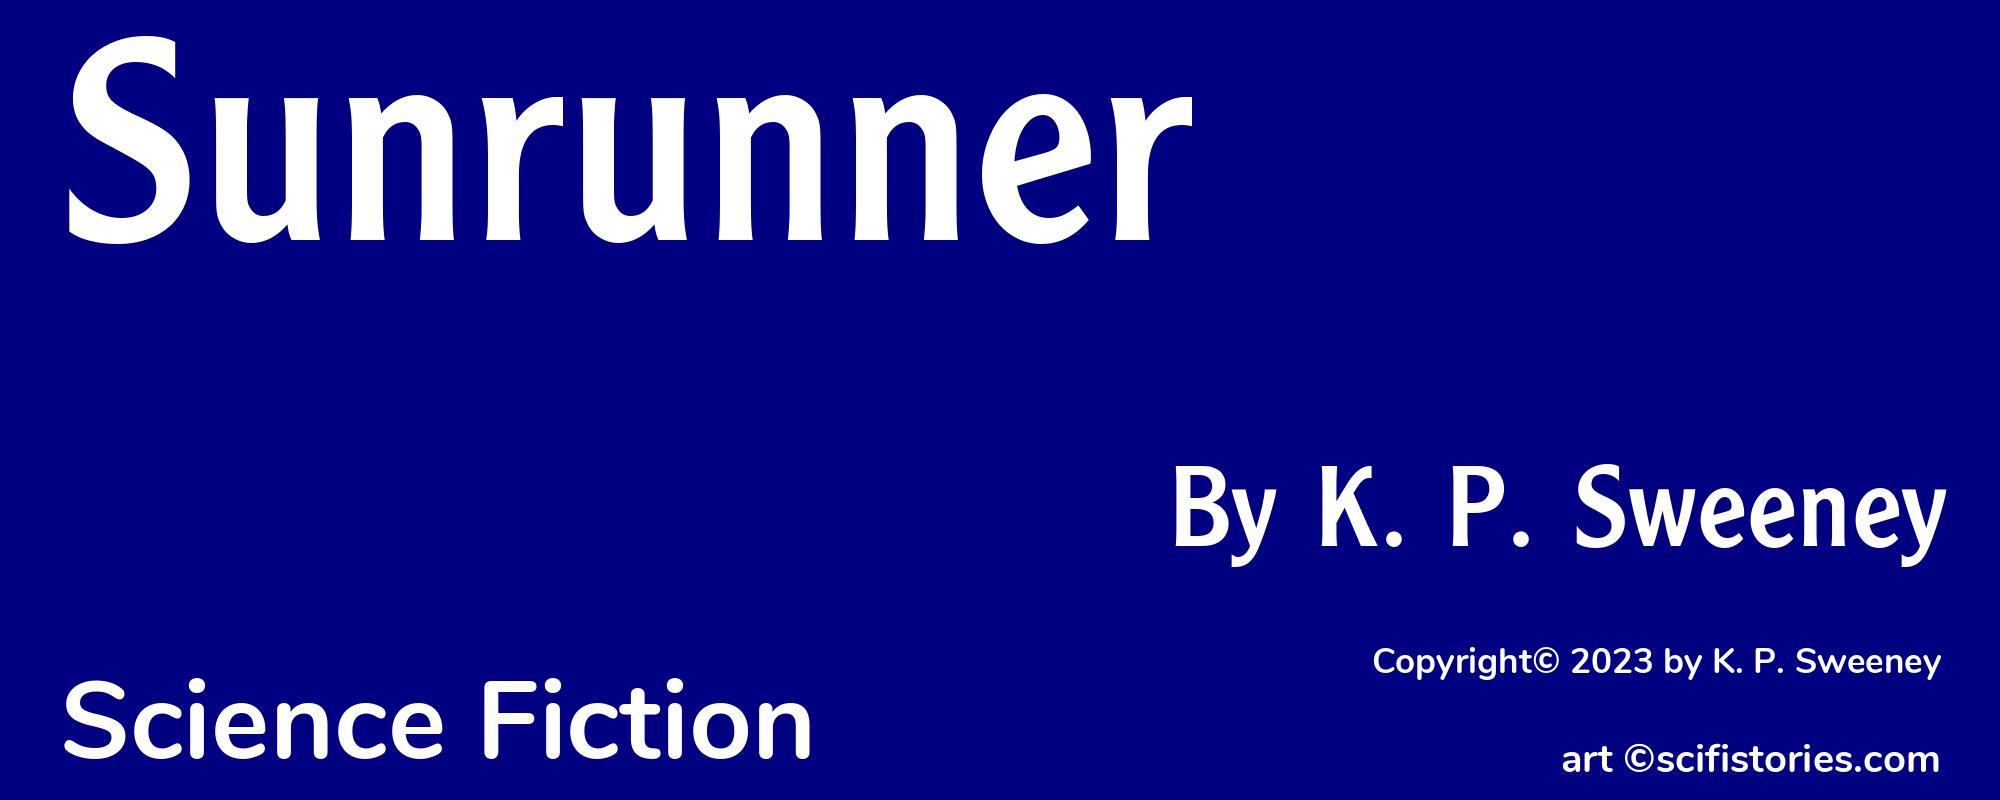 Sunrunner - Cover